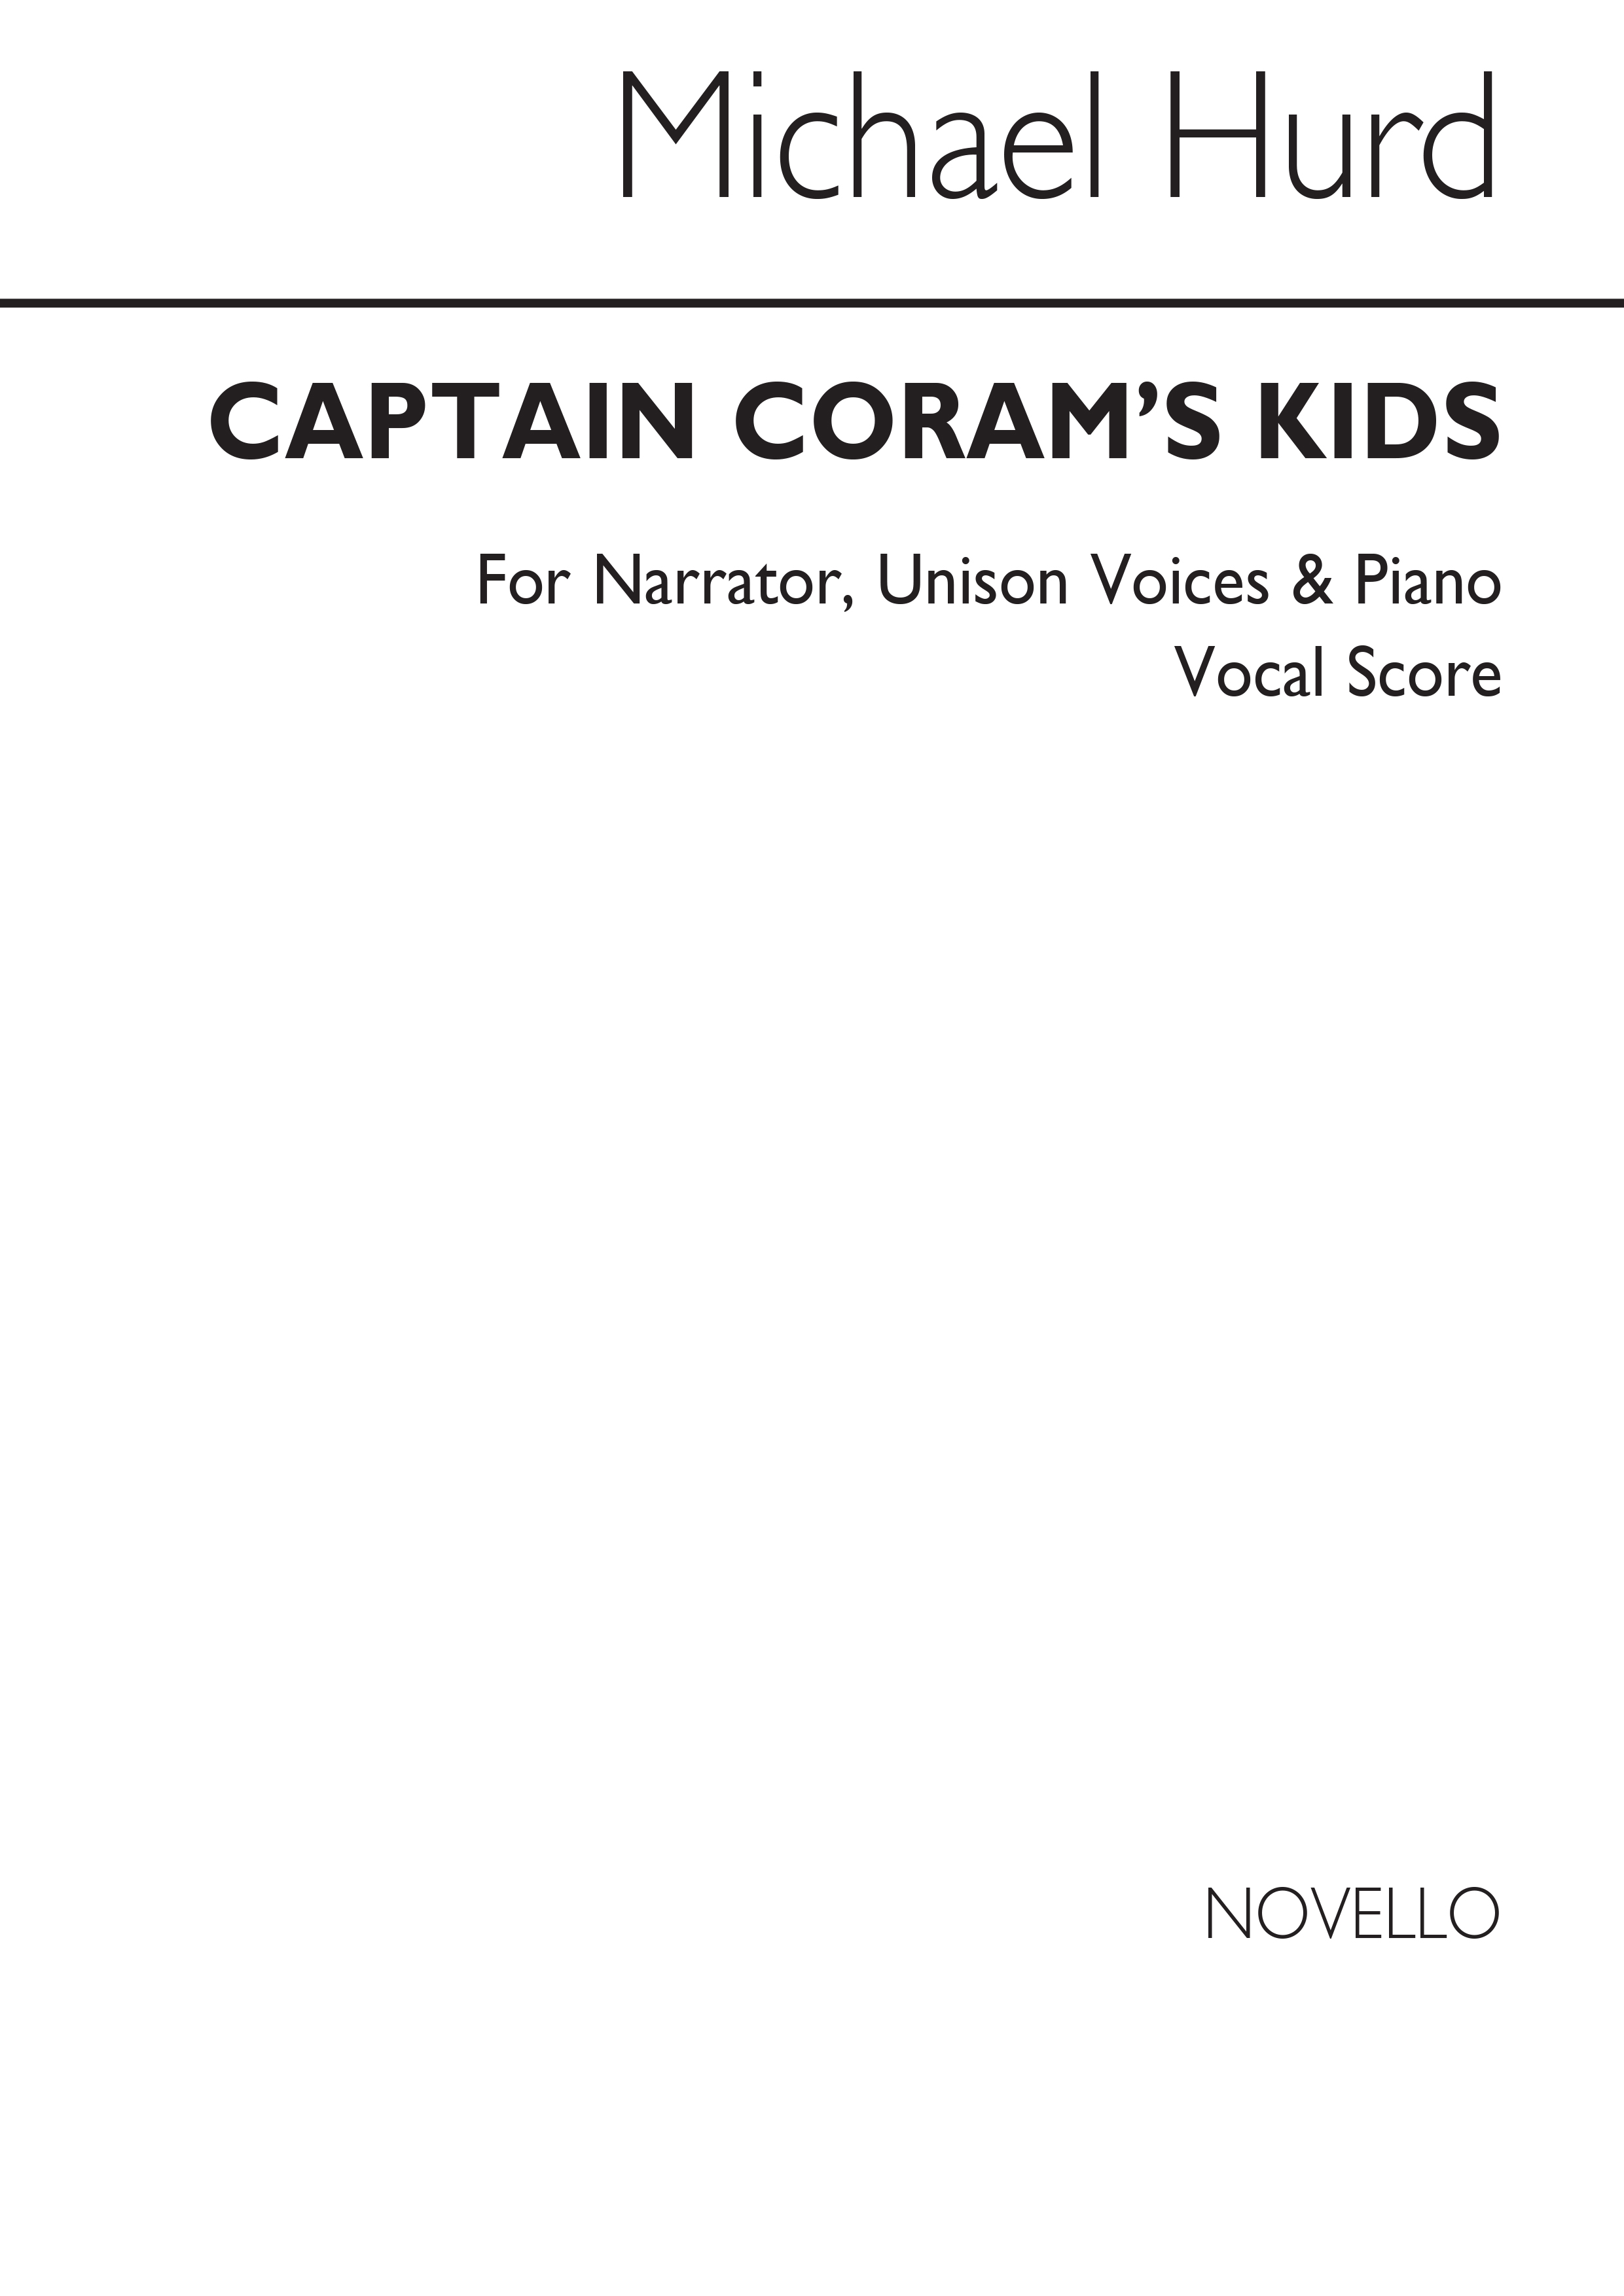 Michael Hurd: Captain Coram's Kids: Voice: Vocal Score